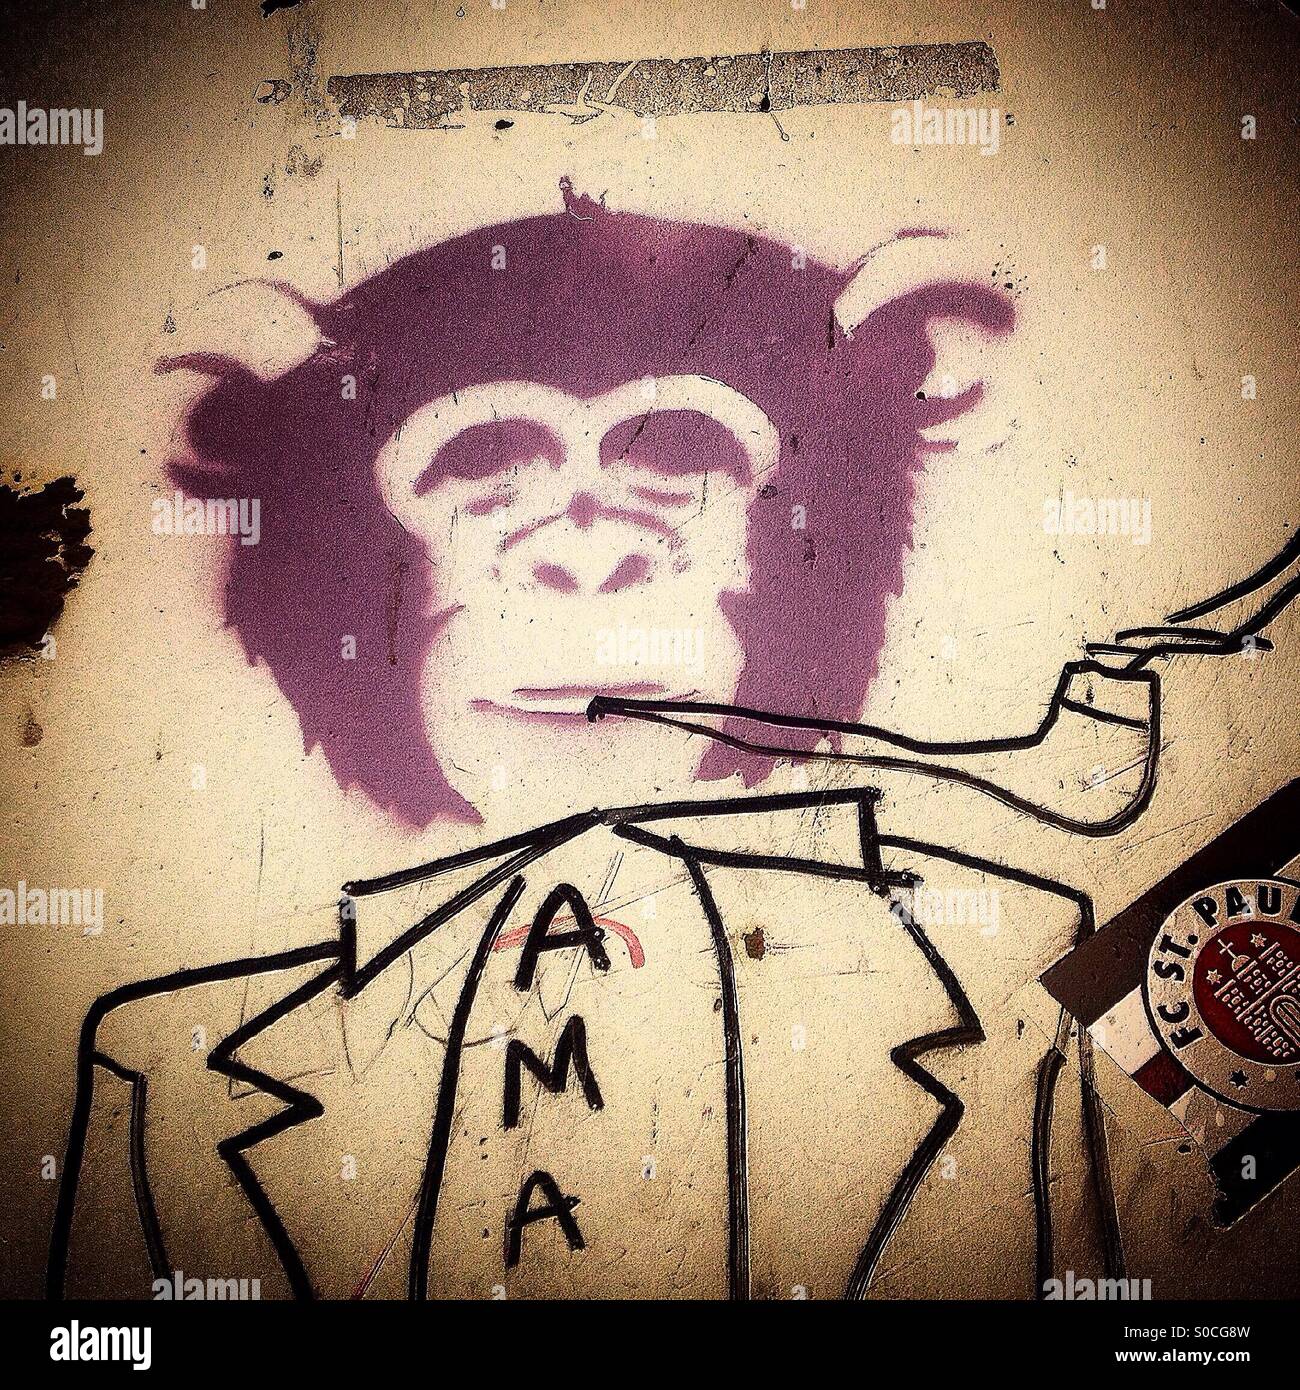 Un graffiti de un mono a fumar en pipa, adorna una pared en Cádiz, Andalucía, España Foto de stock